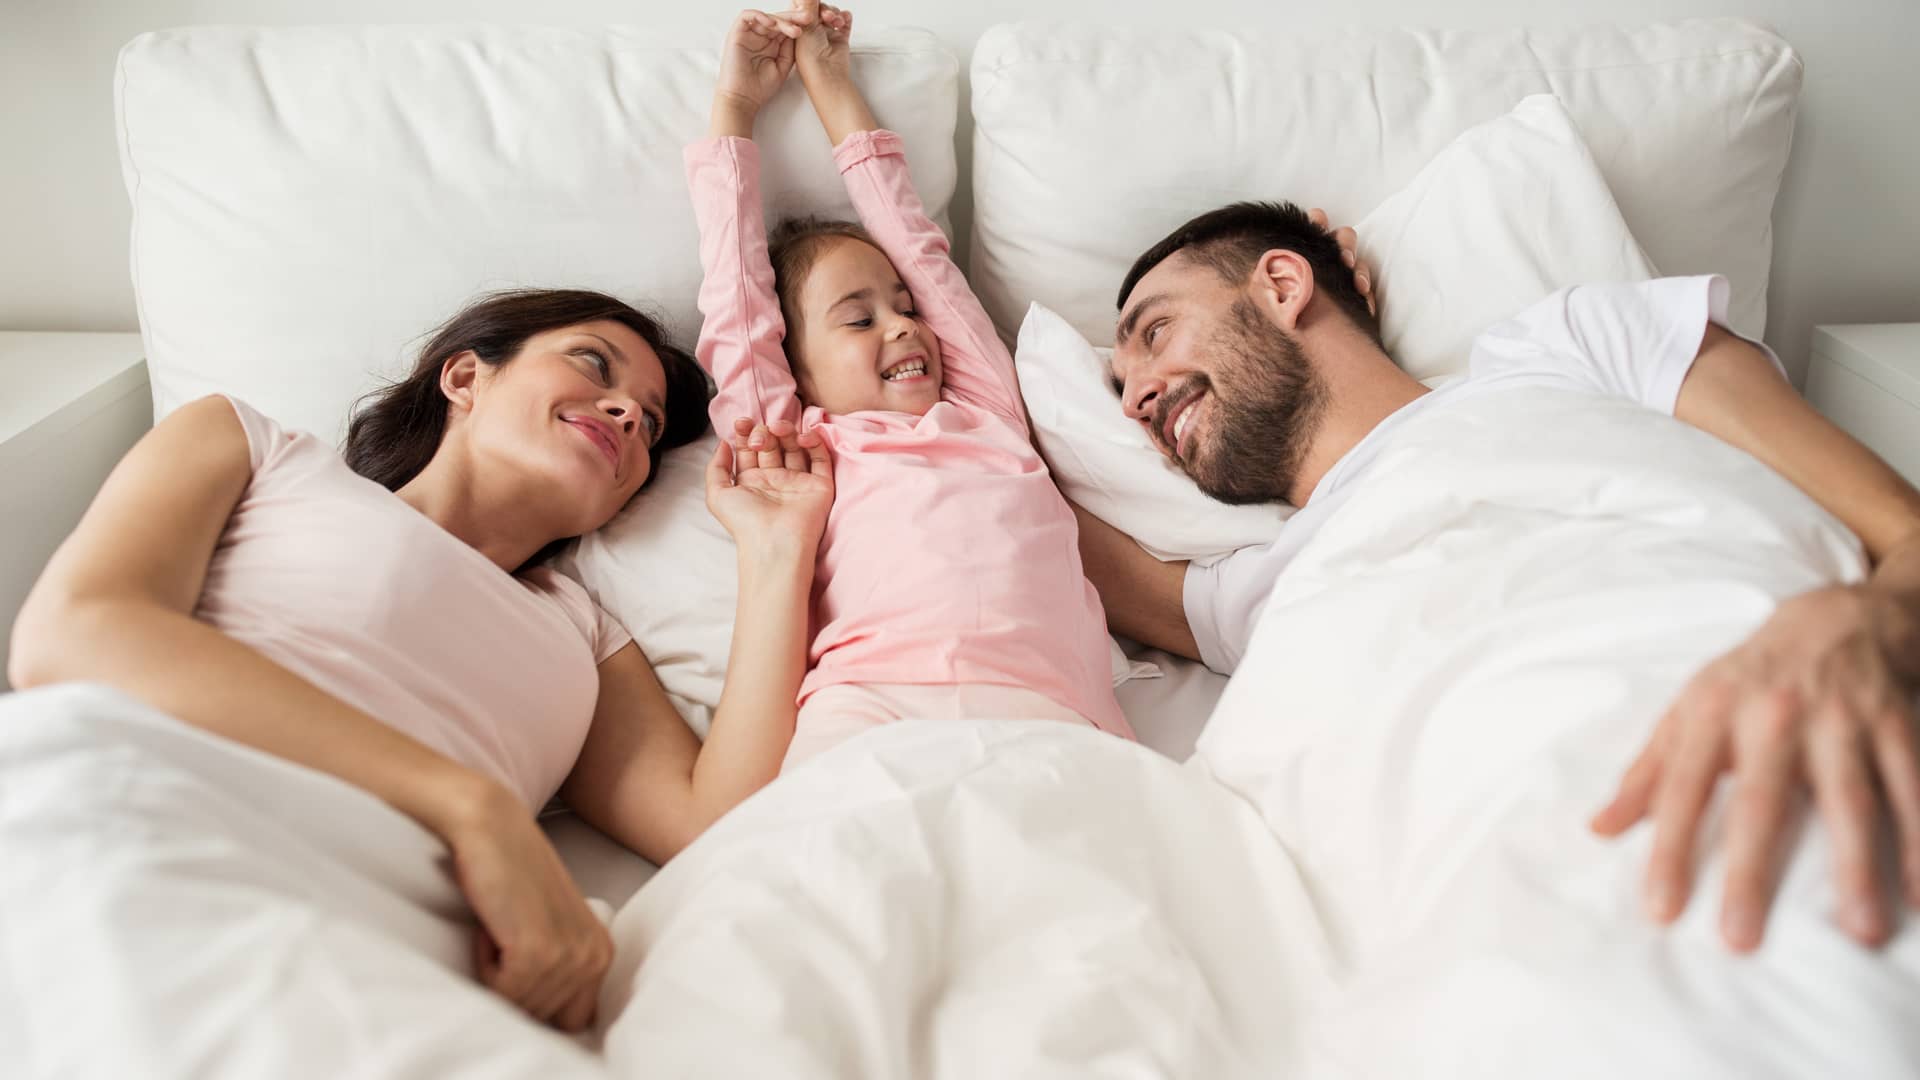 matrimonio tranquilo con su hija en la cama porque tienen un seguro de decesos de proteccion familiar de aura seguros